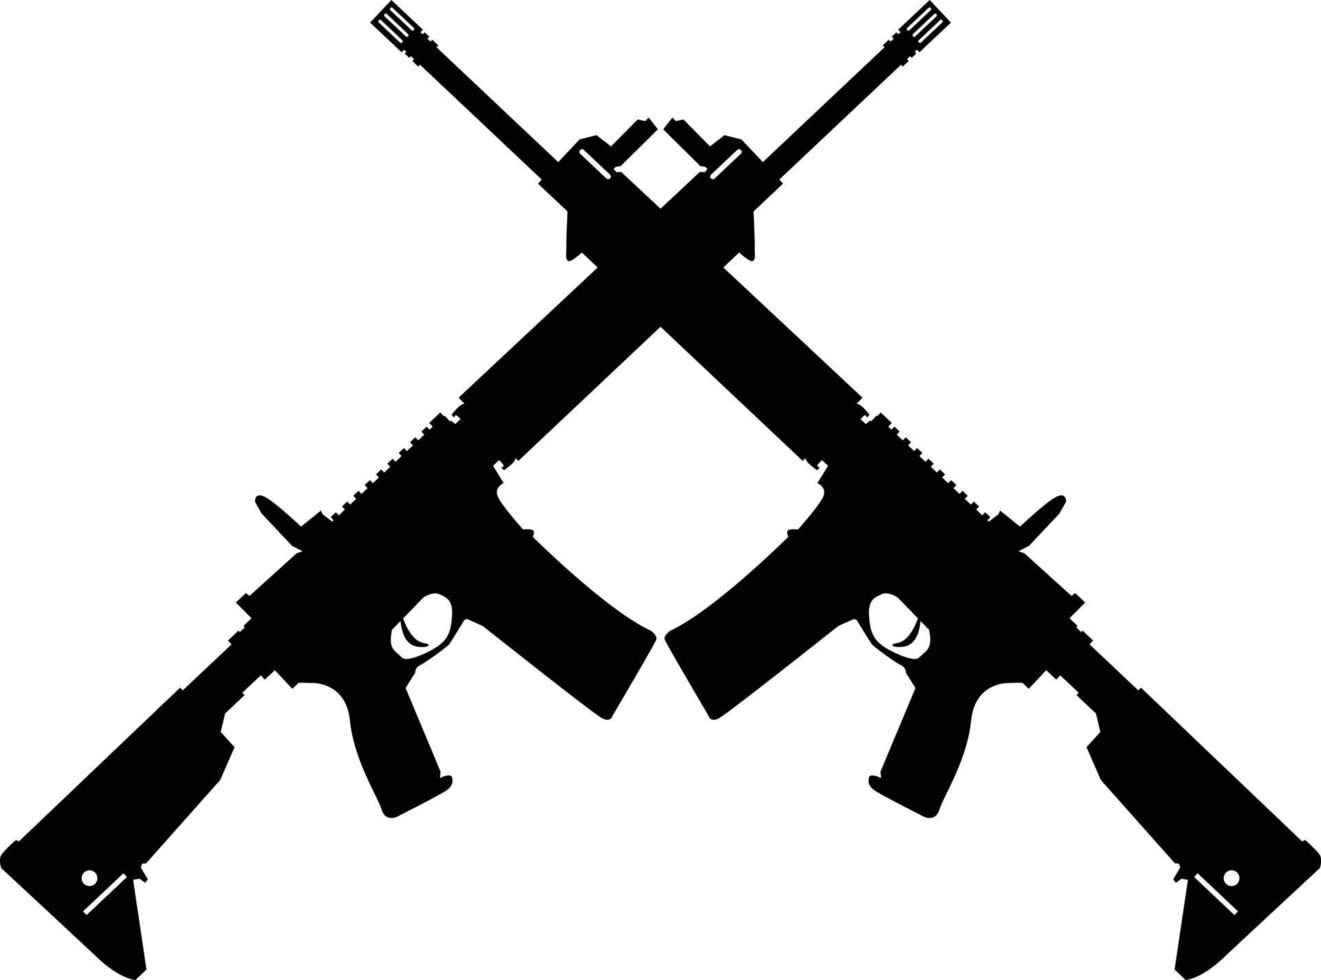 rifles de assalto cruzados em fundo branco. símbolo de espingarda de assalto ak47 silhueta cruzada. dois cruzaram uma placa de fuzil de assalto. estilo plano. vetor